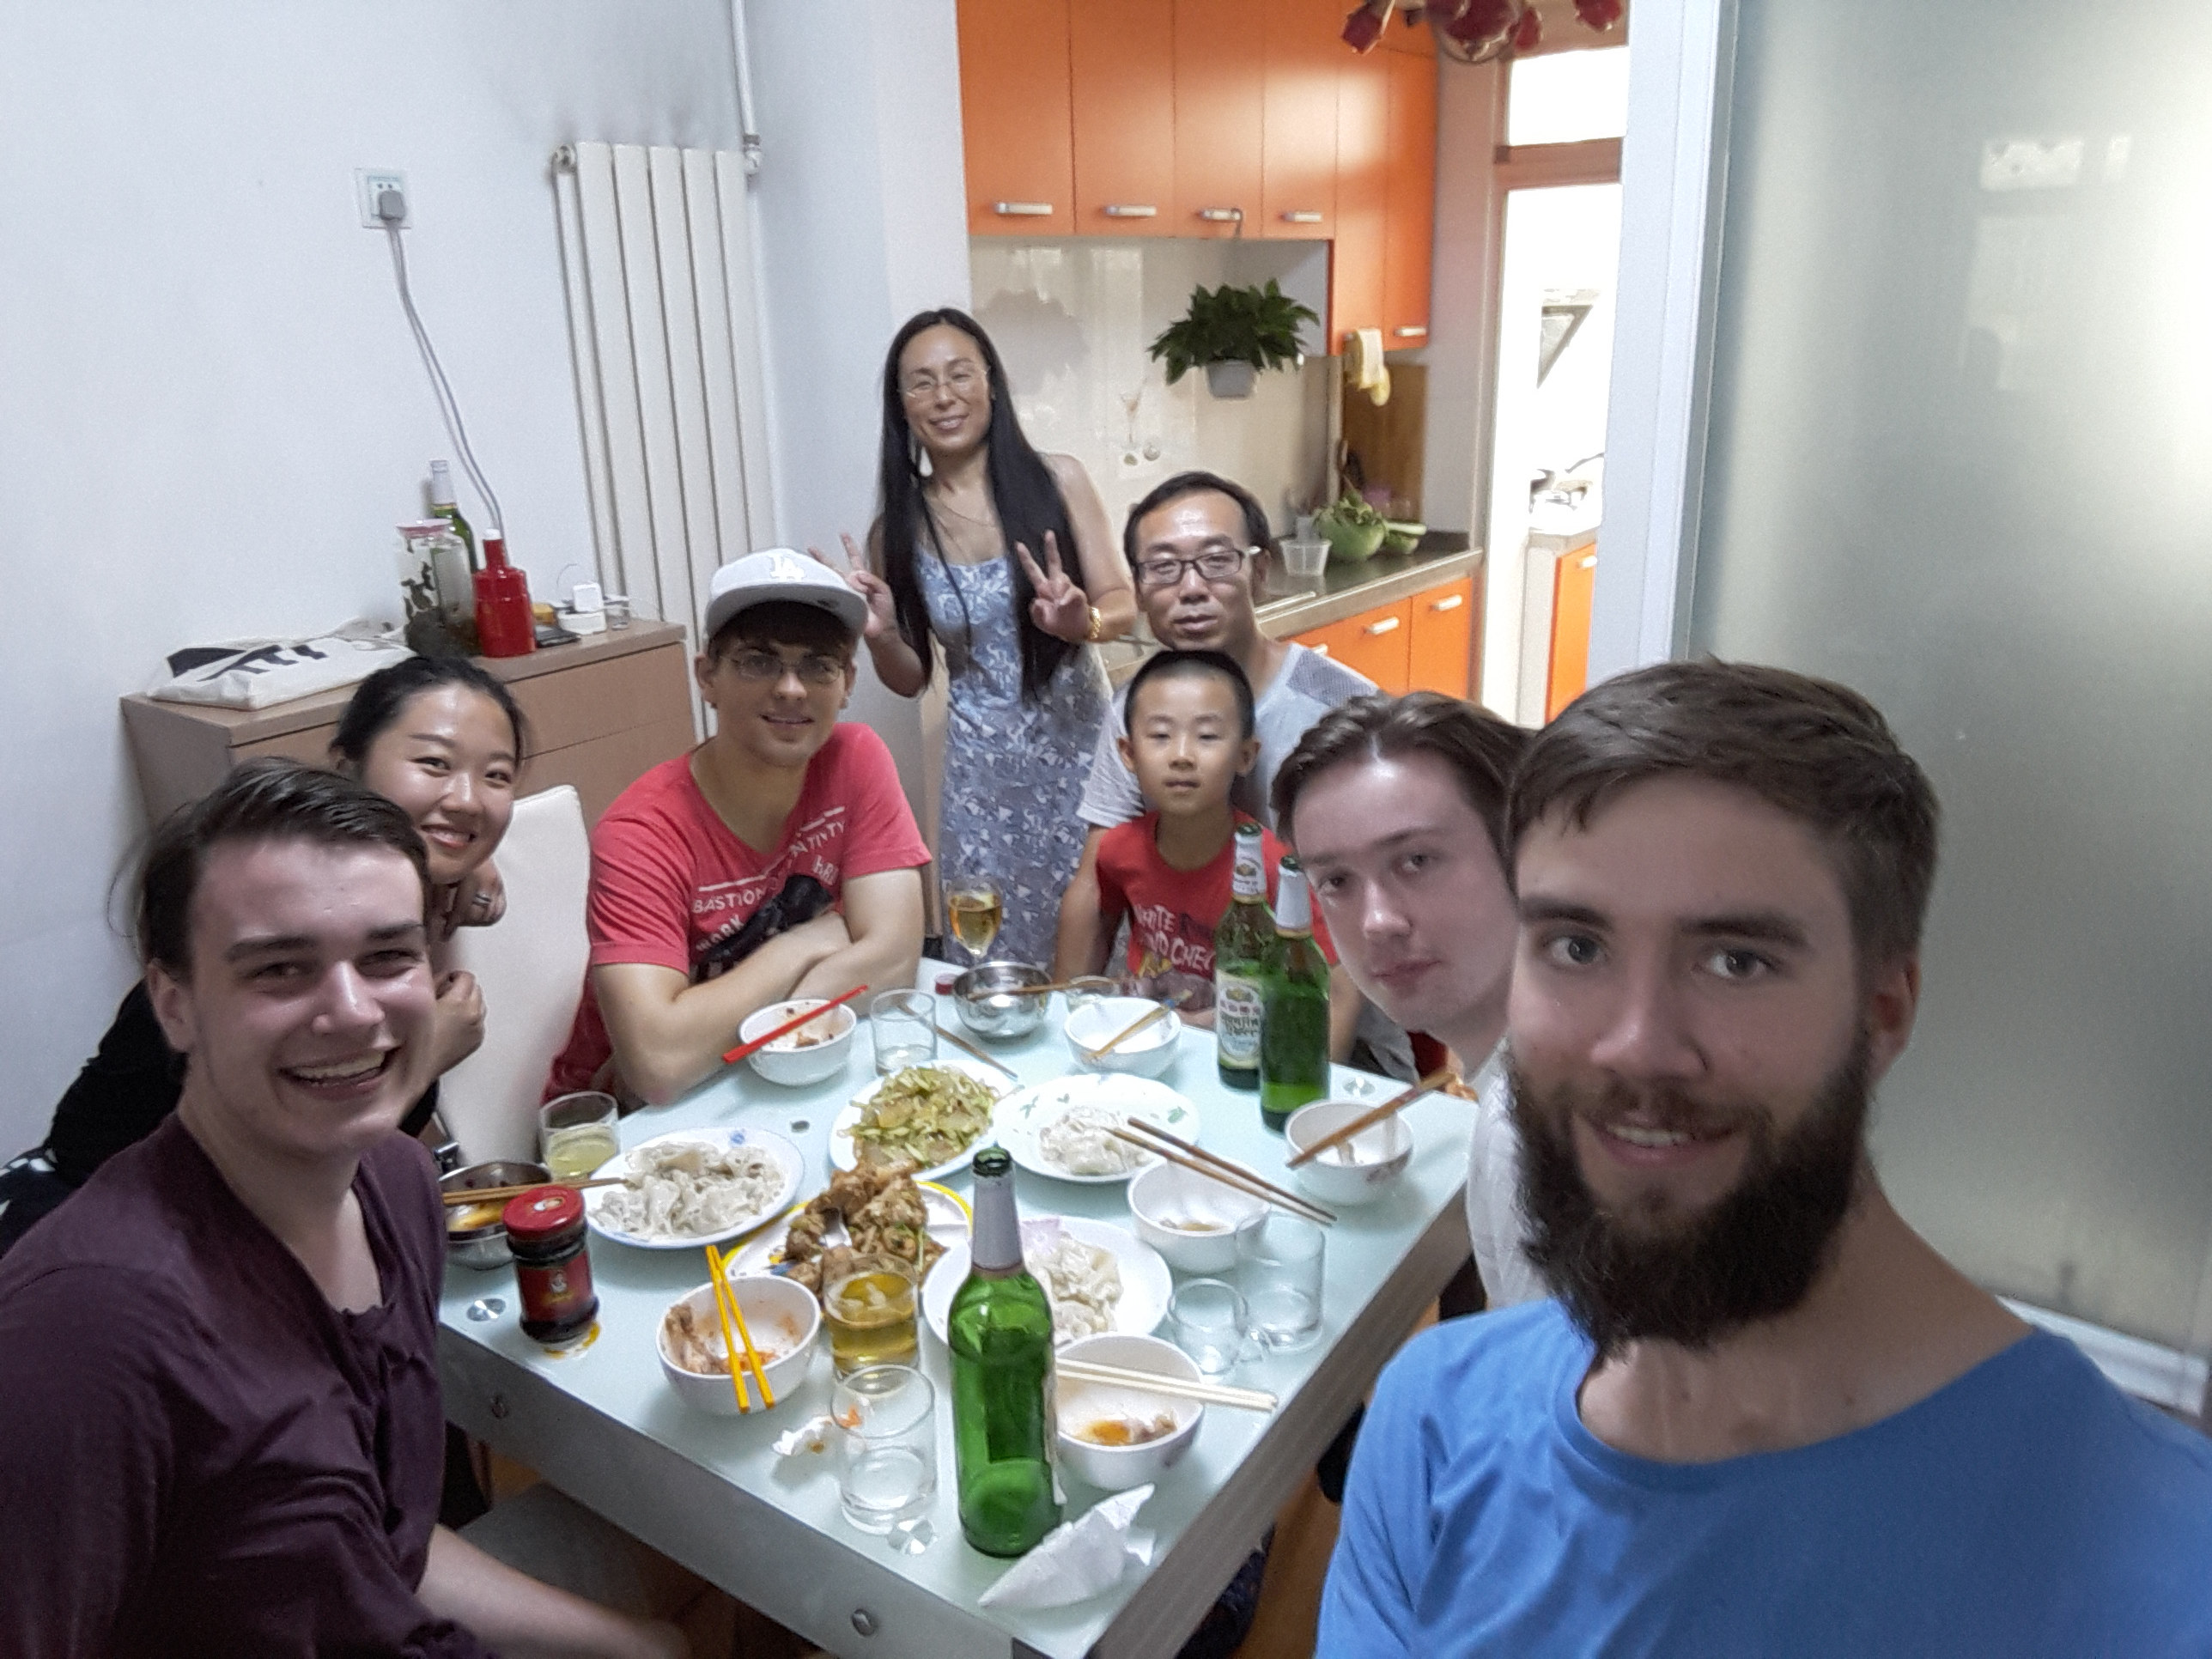 Tag 5: Am Donnerstag besuchten wir in kleinen Gruppen chinesische Familien, um gemeinsam mit ihnen chinesisch zu kochen und einen Eindruck vom typischen Leben in Beijing zu bekommen.